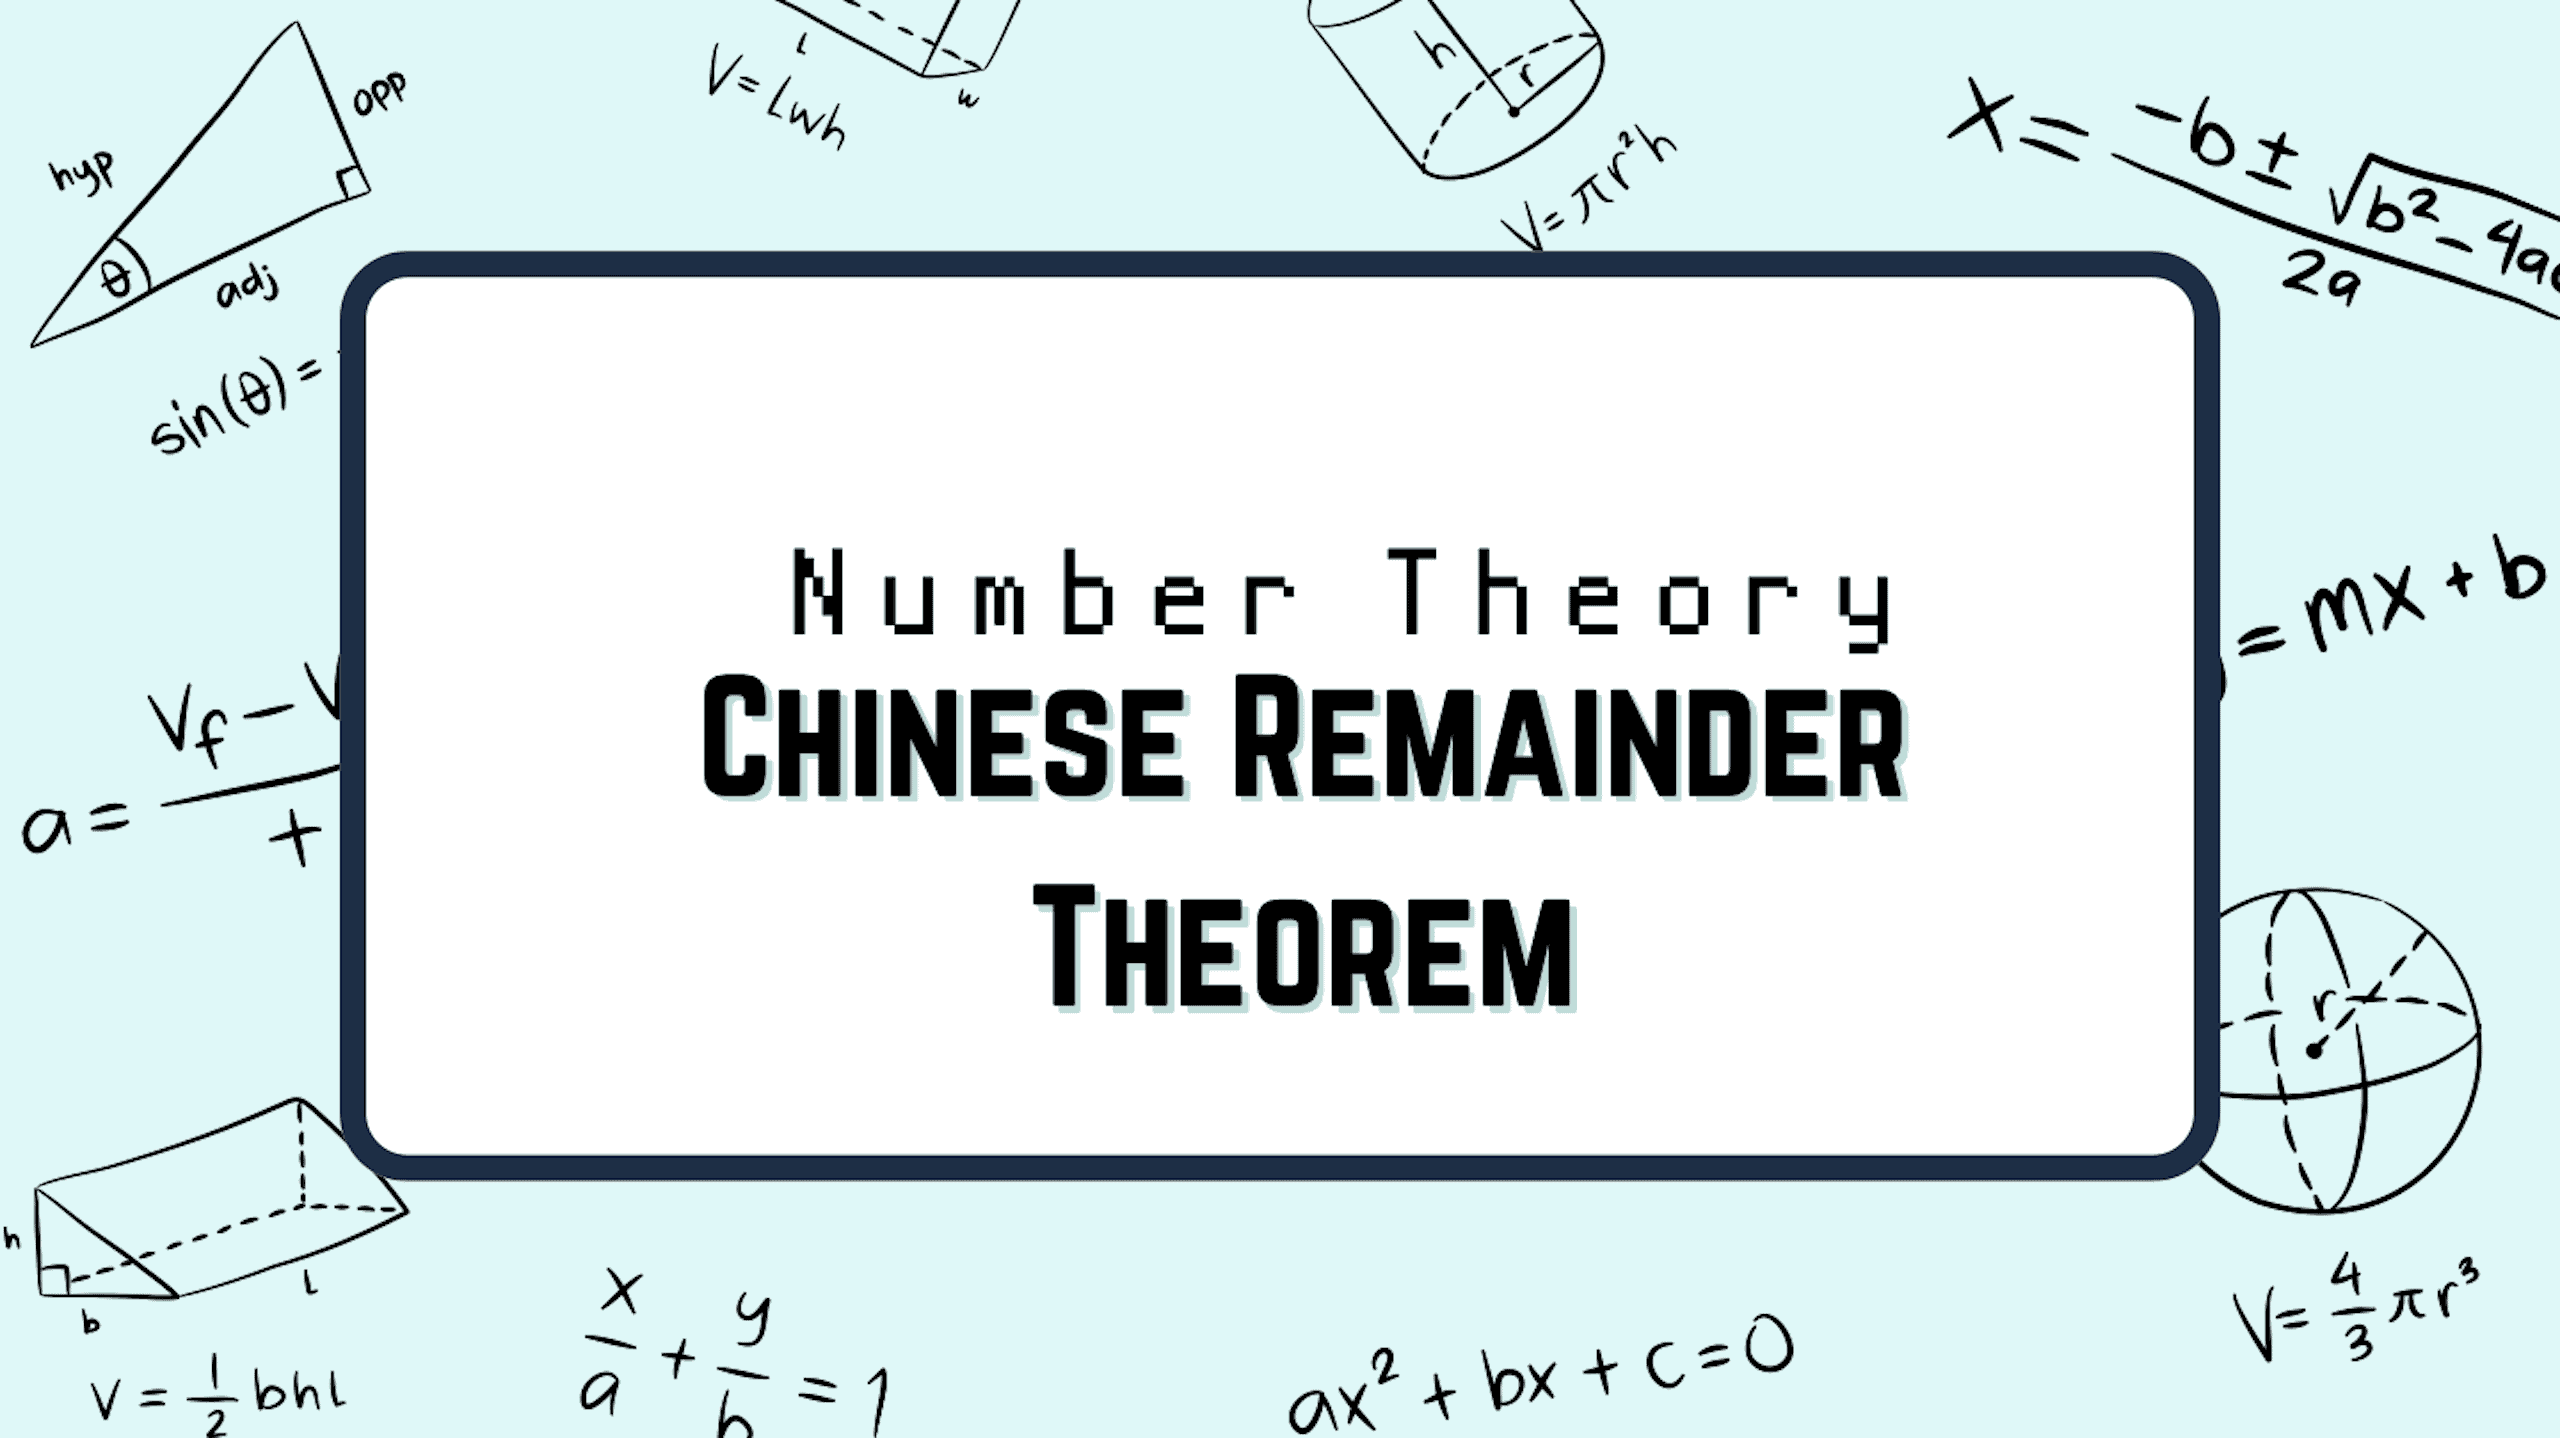 中國餘式定理 Chinese Remainder Theorem 與 同構 Isomorphism 特性